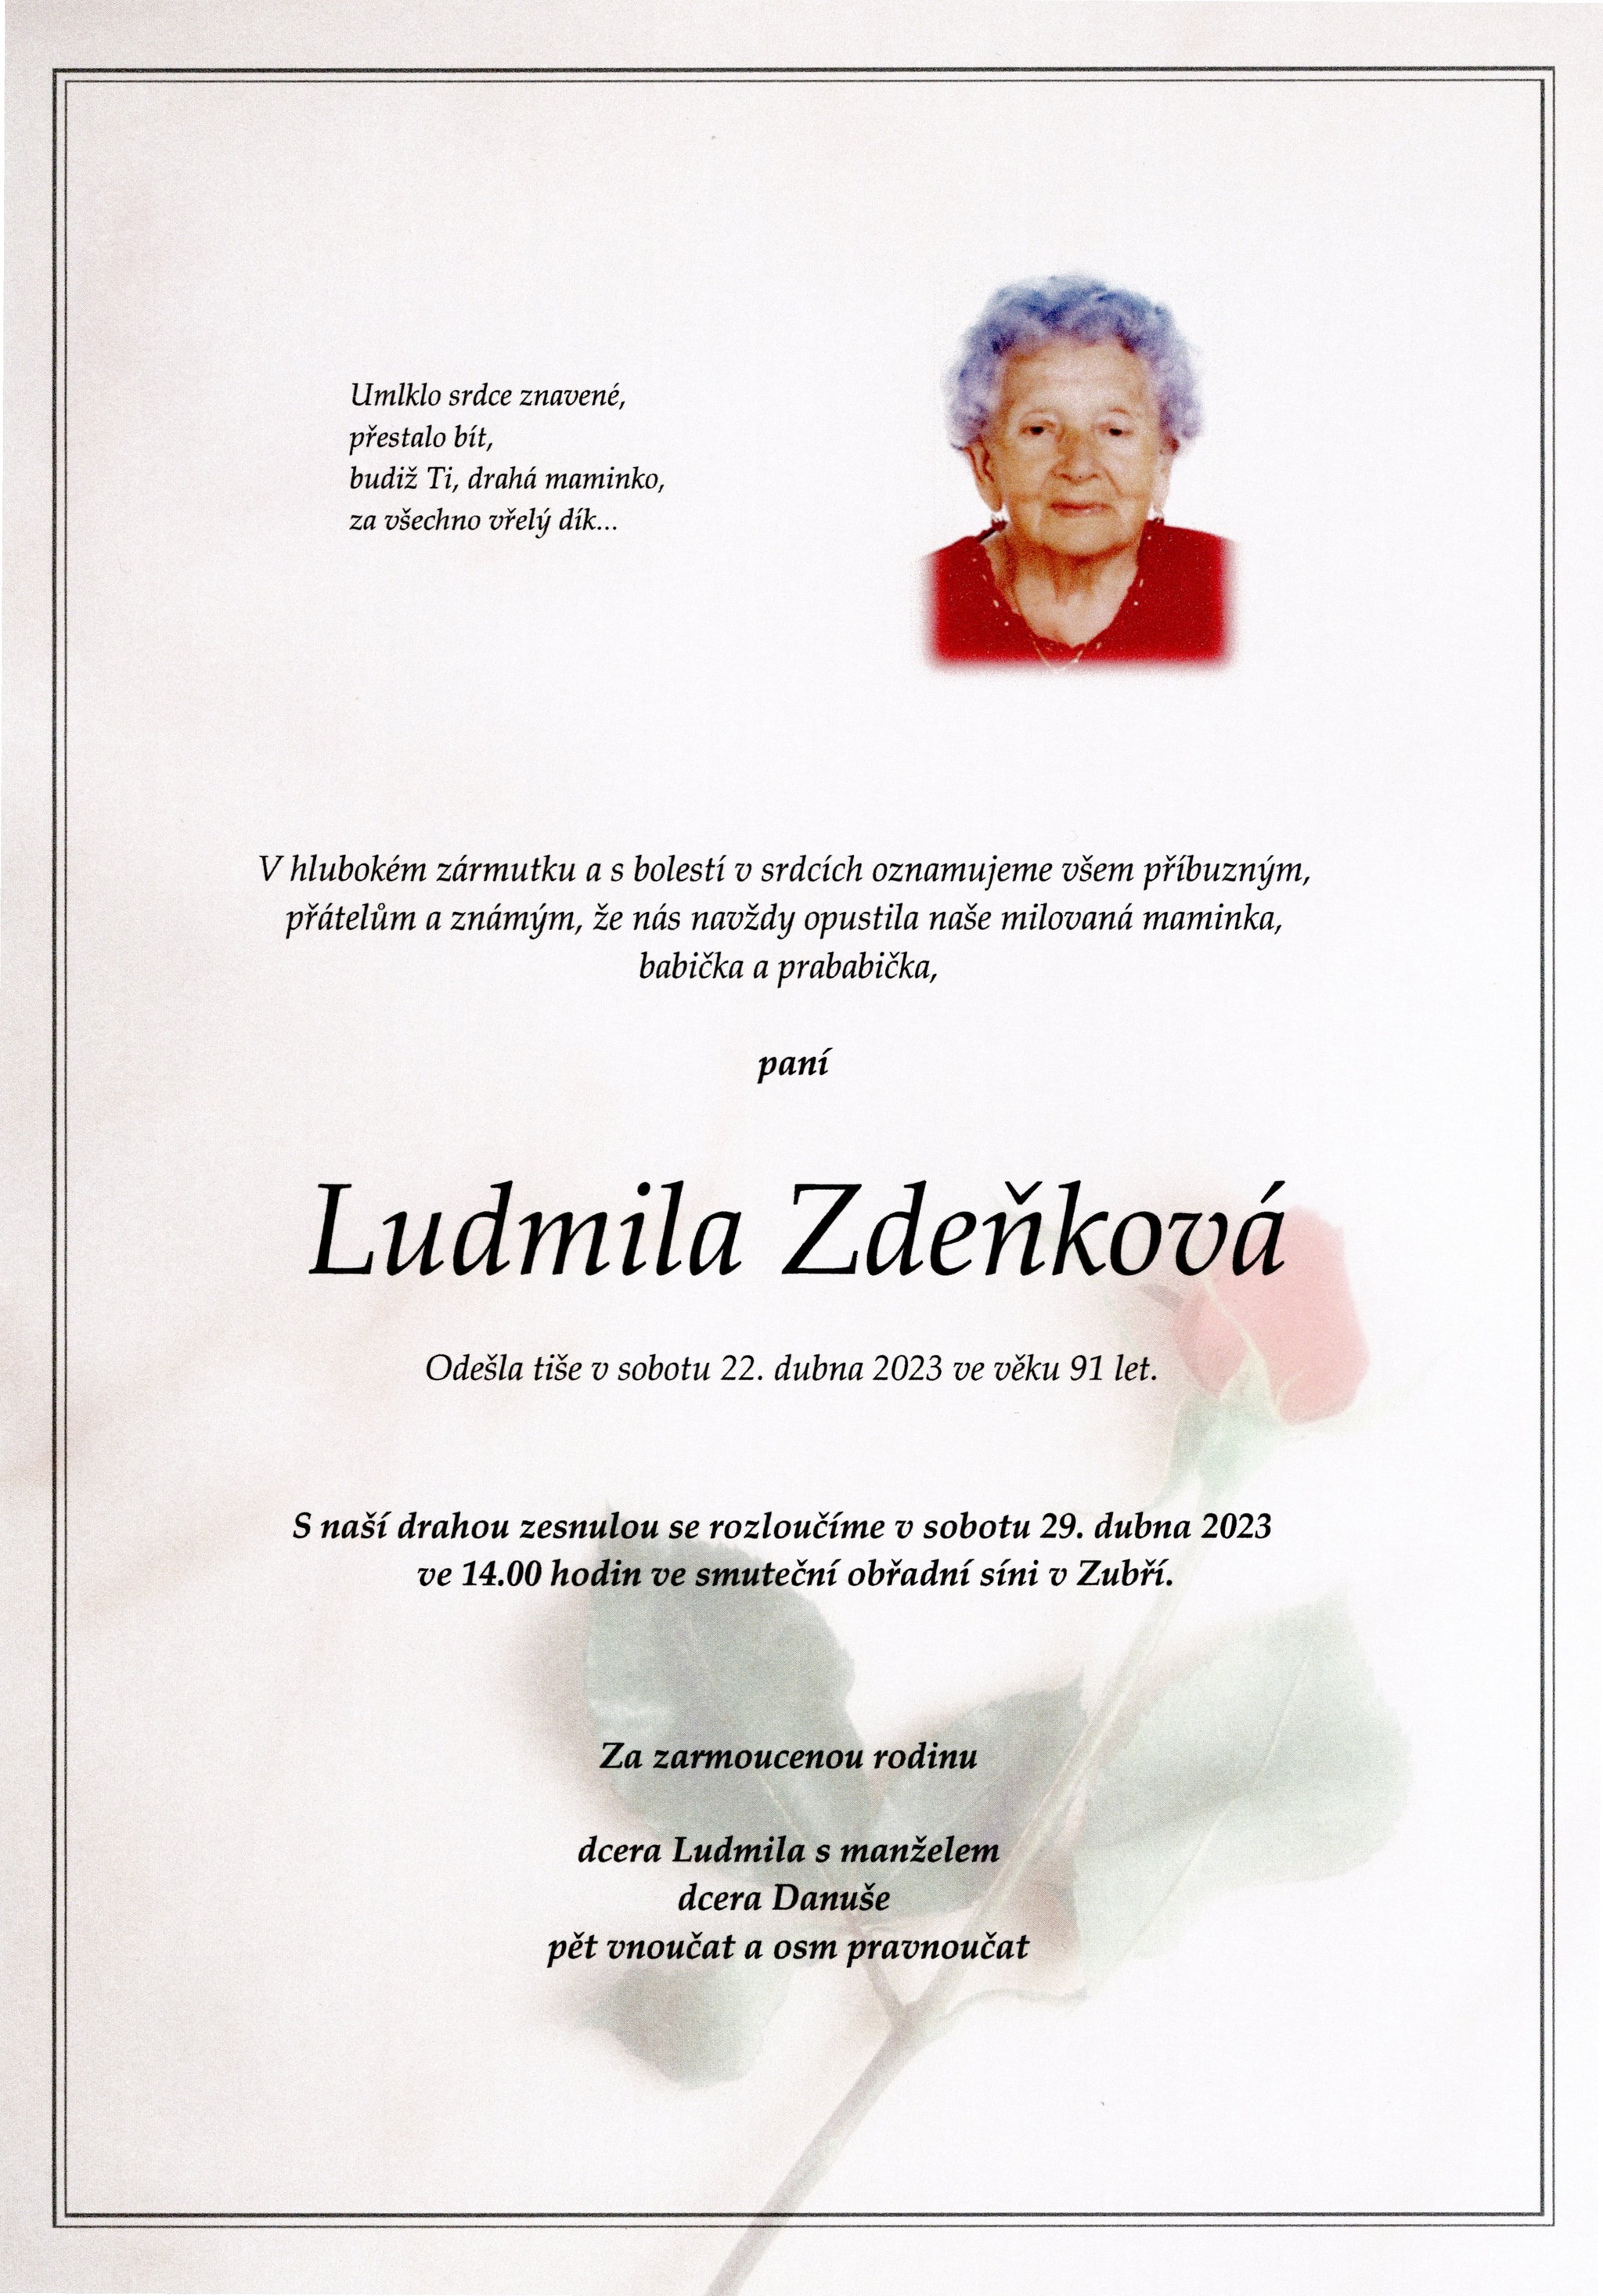 Ludmila Zdeňková